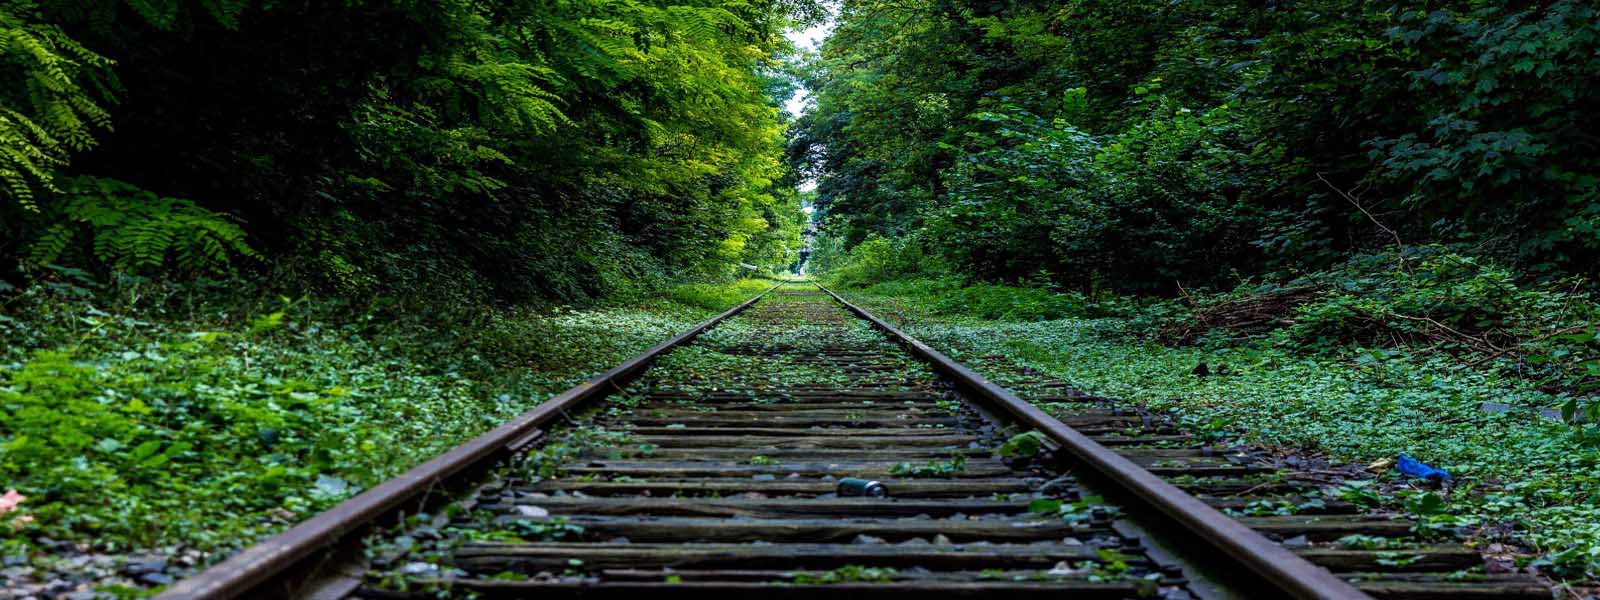 Matara Beliatta Railway to be declared open - 2019